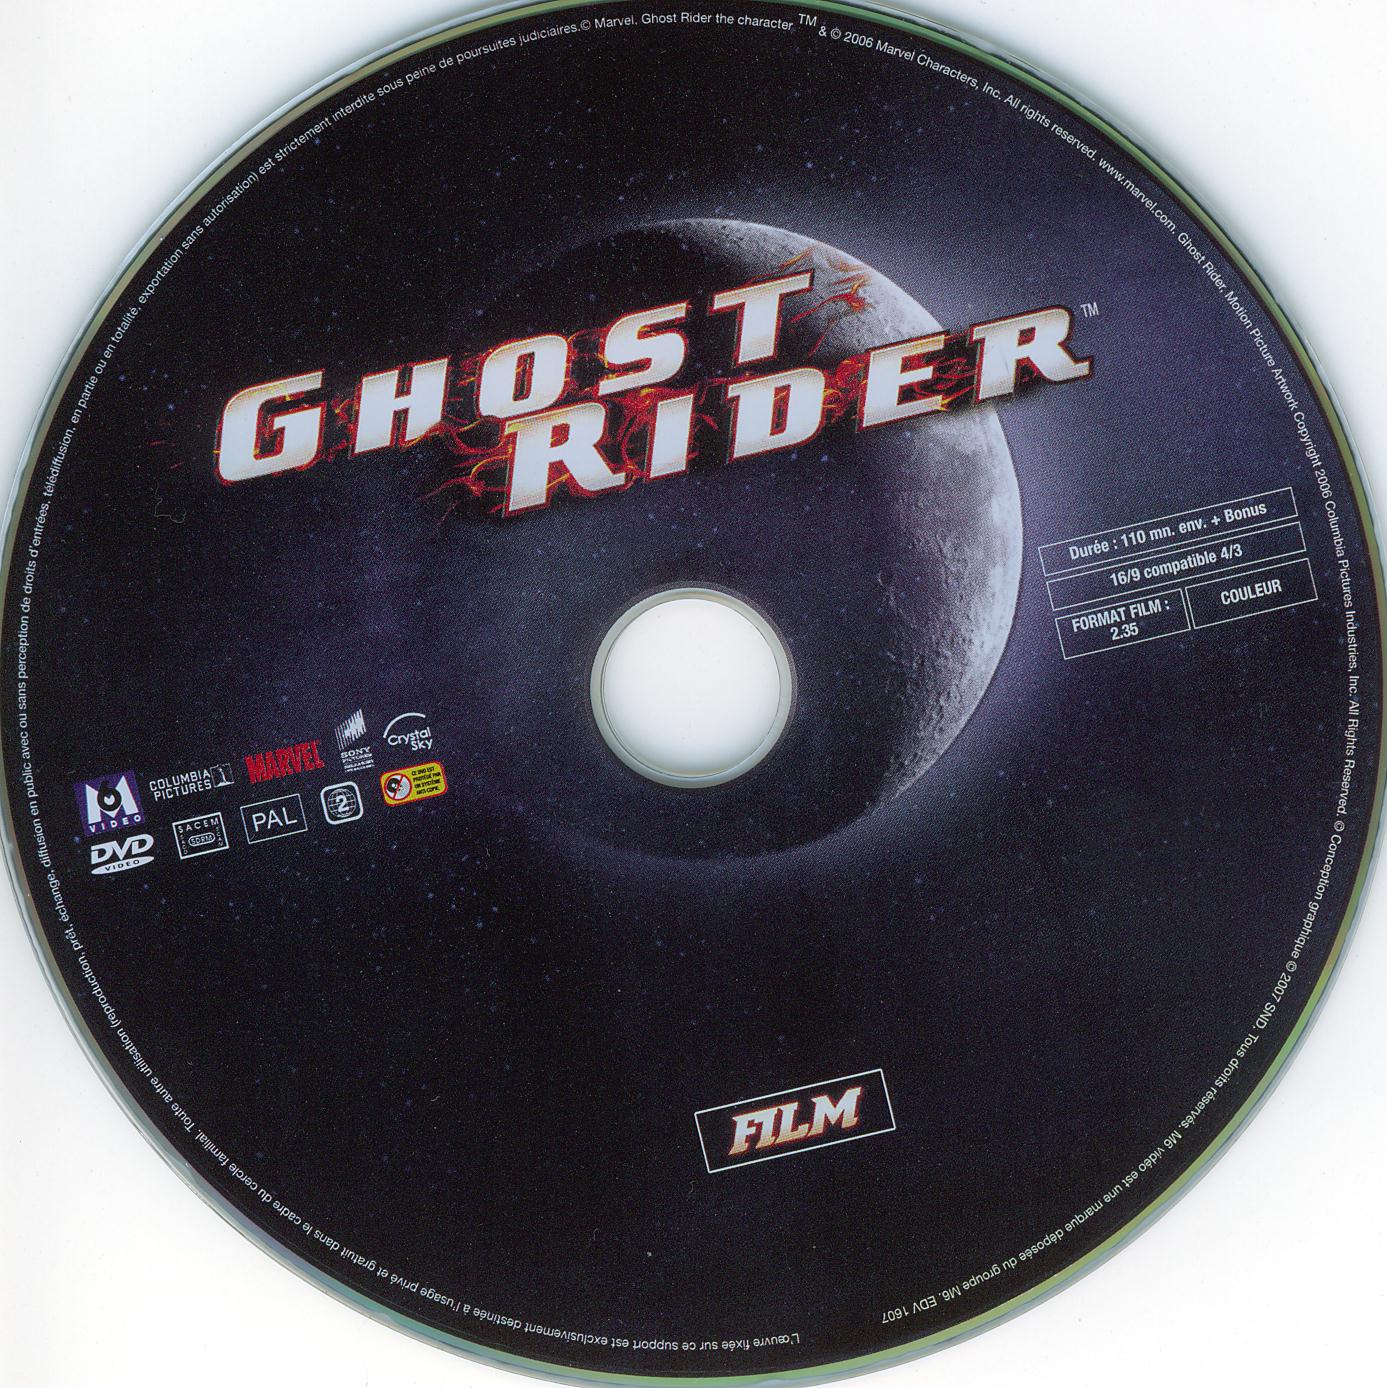 Ghost rider v2